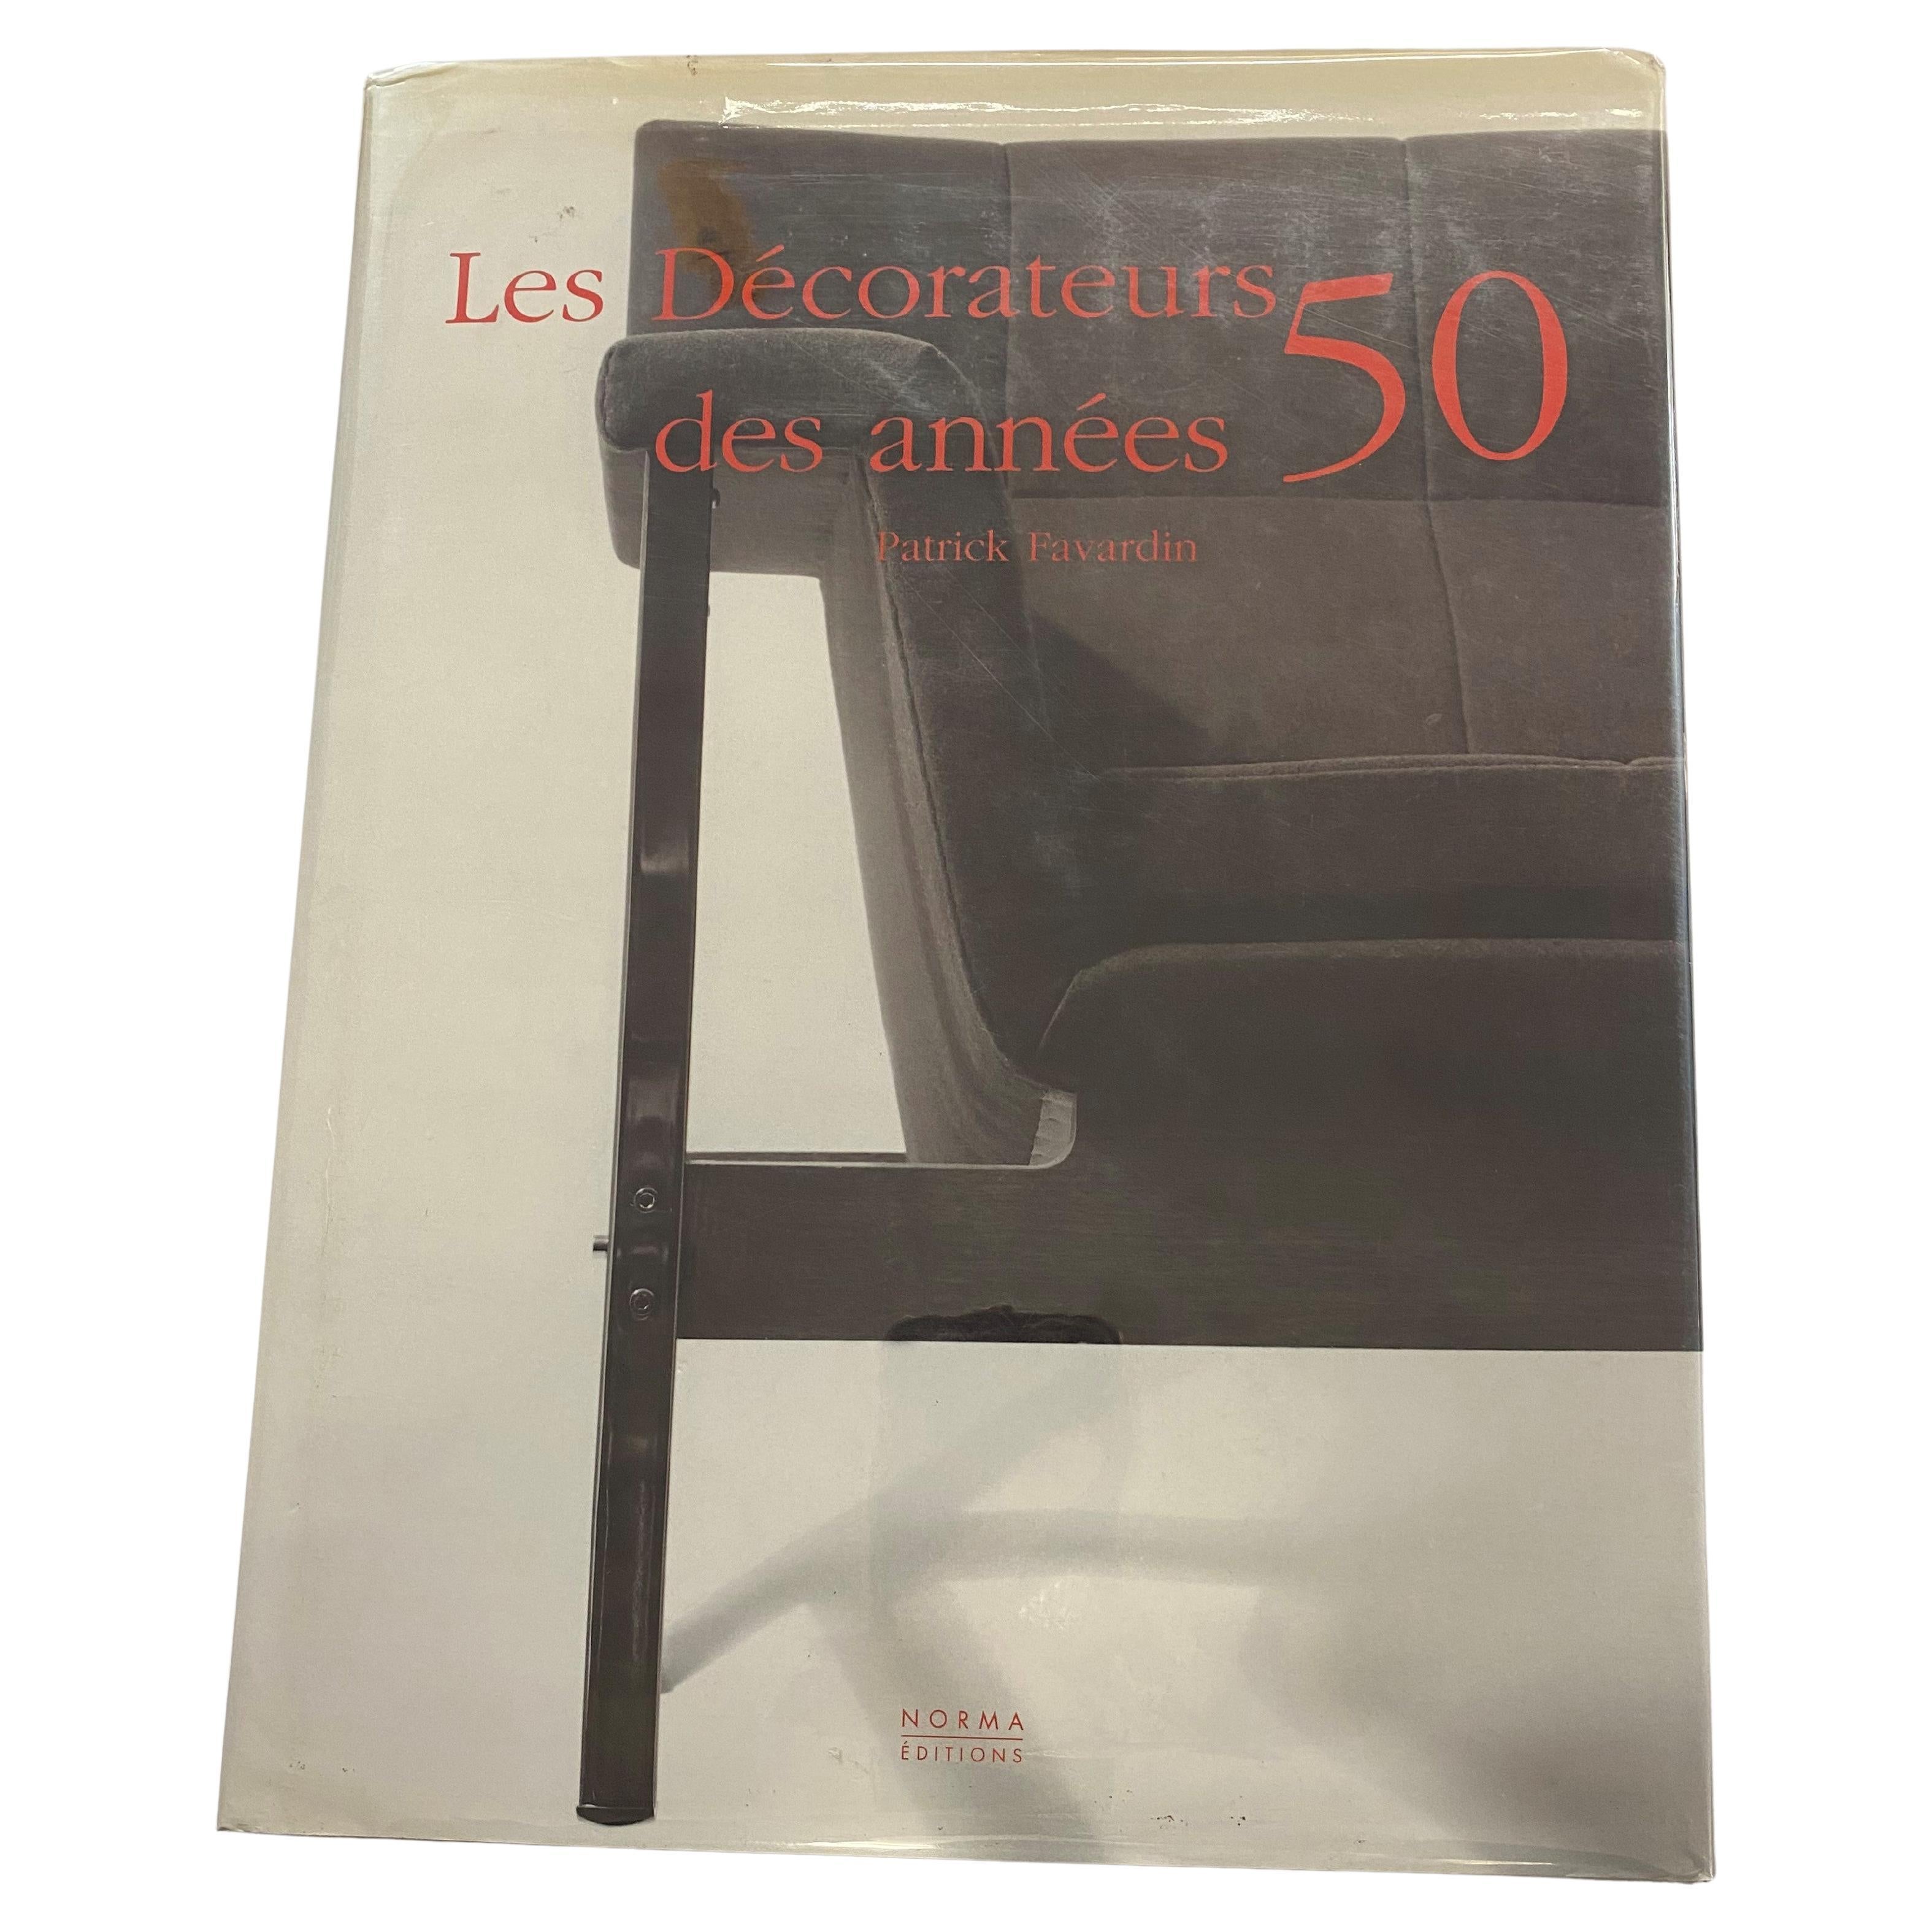 Les Decorateurs des annees 50 by Paterick Favardin (Book) For Sale